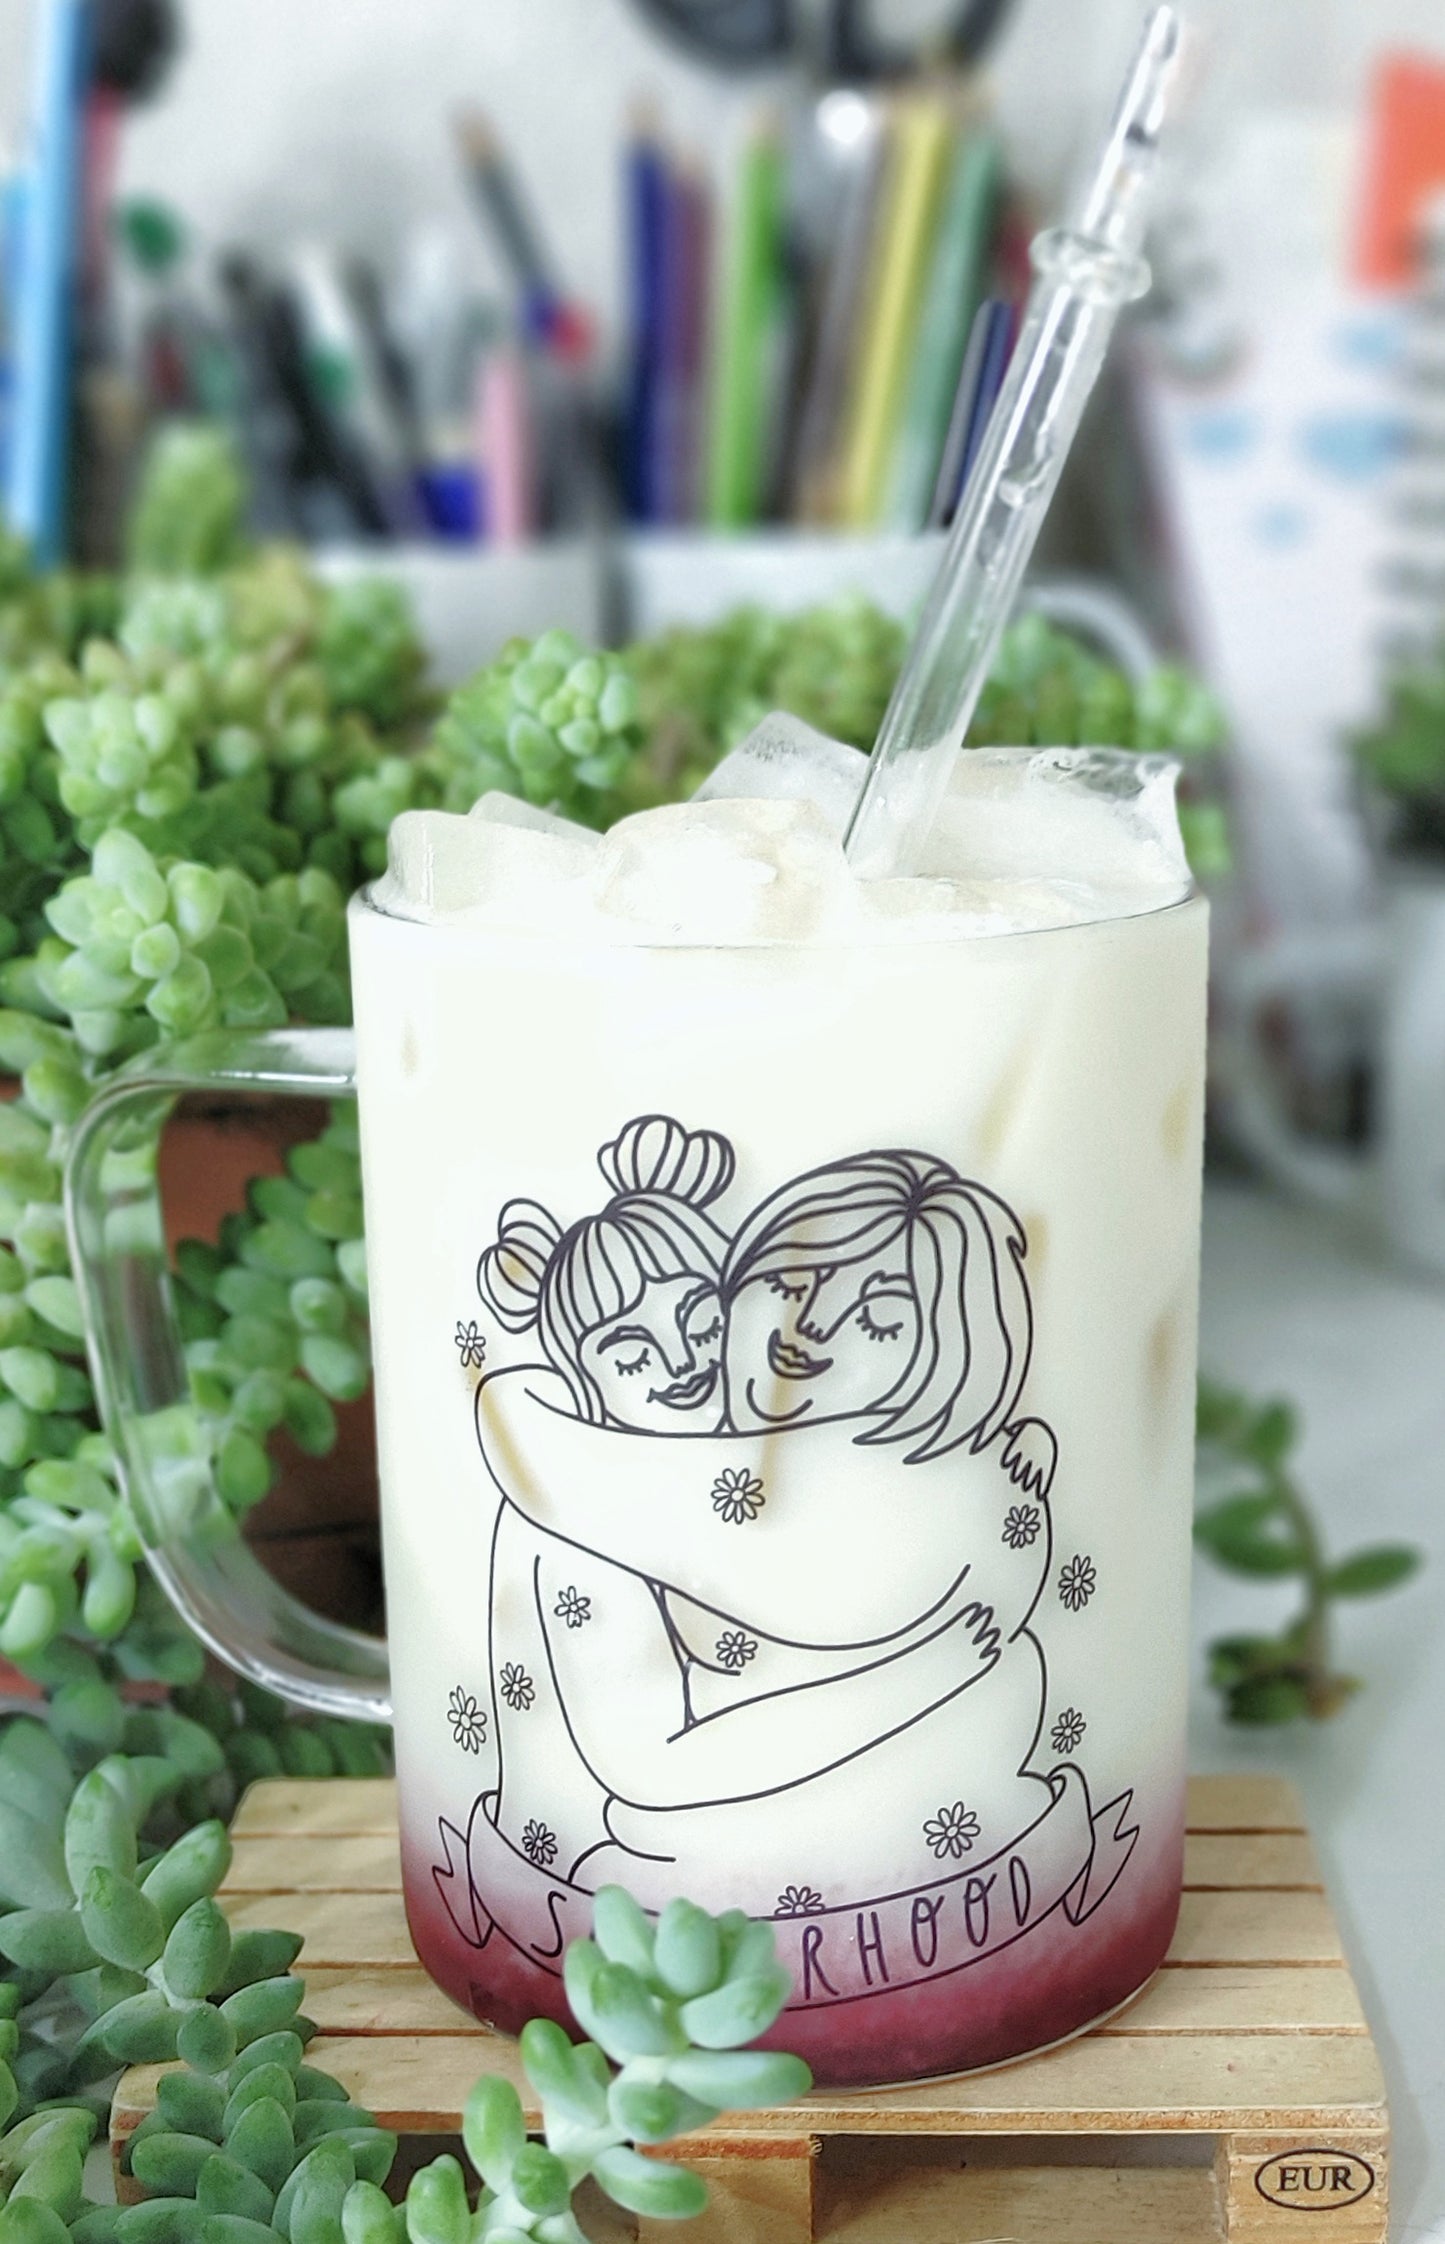 SOLD OUT: Sisterhood - glass mug